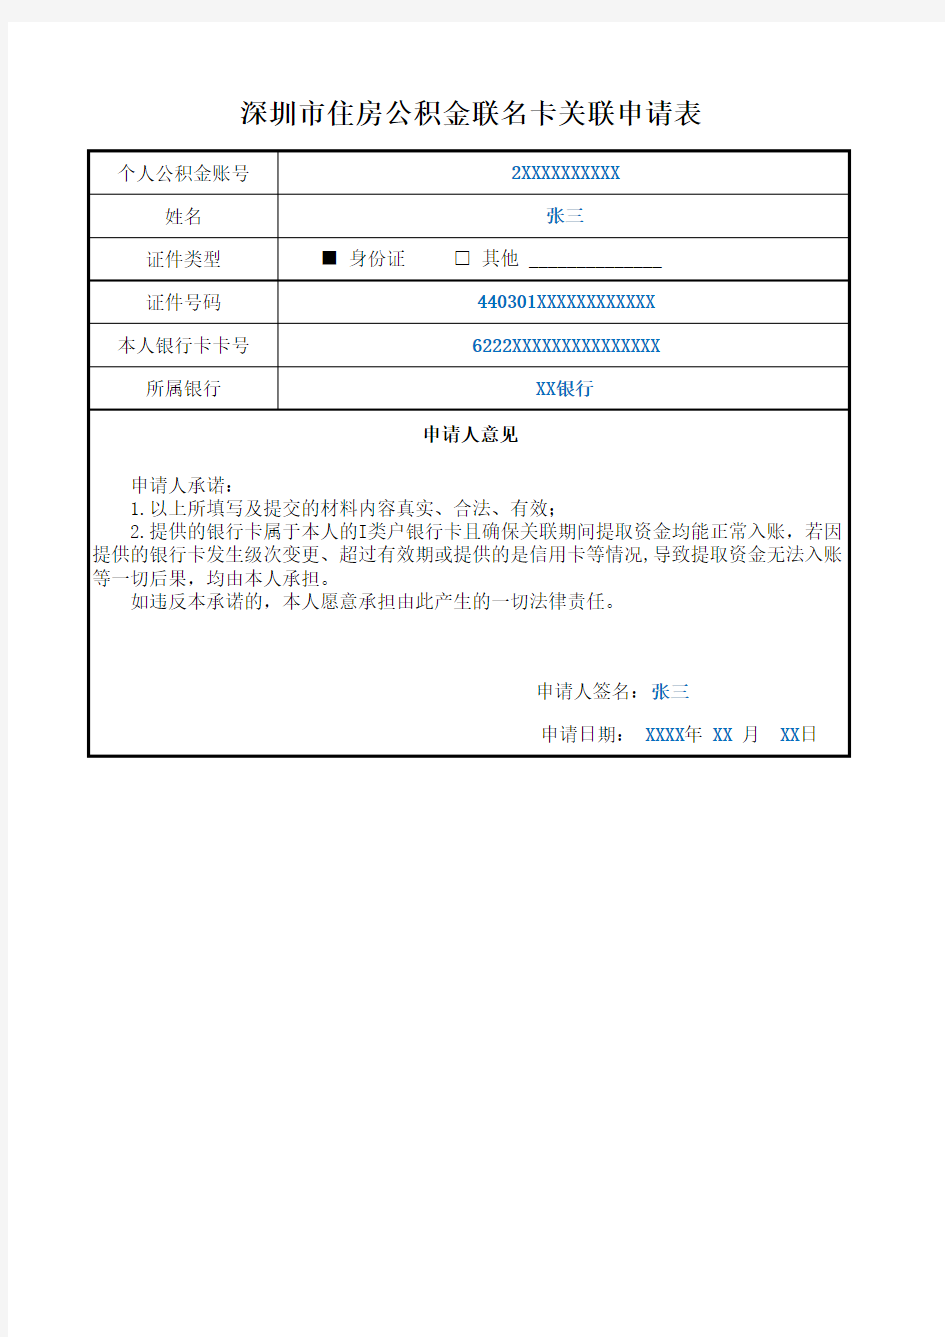 深圳市住房公积金联名卡关联申请表范本图